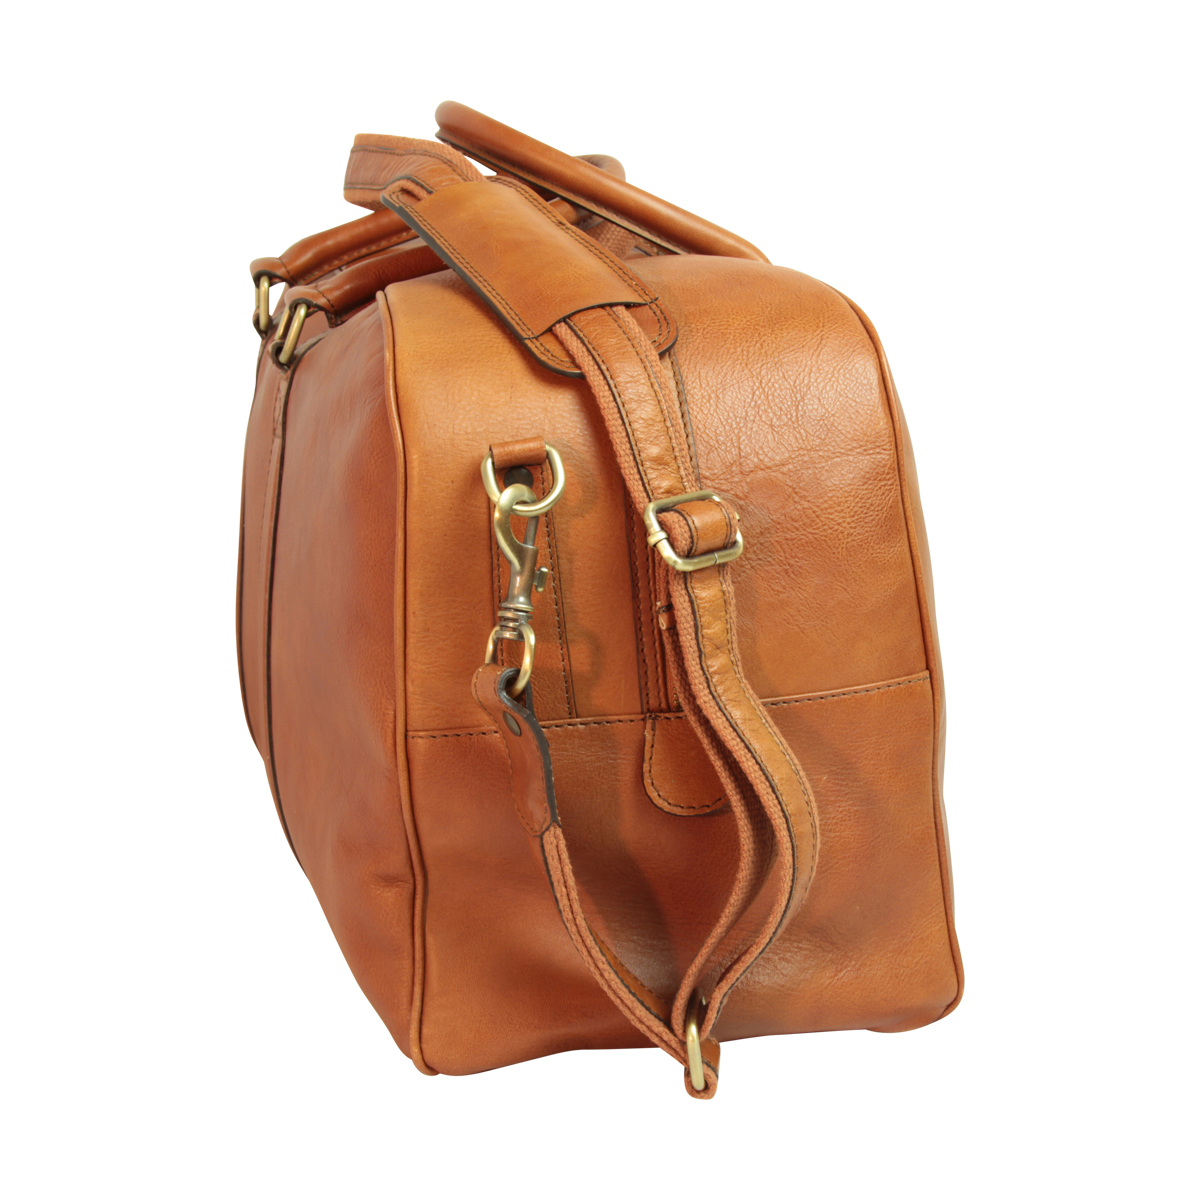 Soft Calfskin Leather Travel Bag - Gold | 030591CO UK | Old Angler Firenze